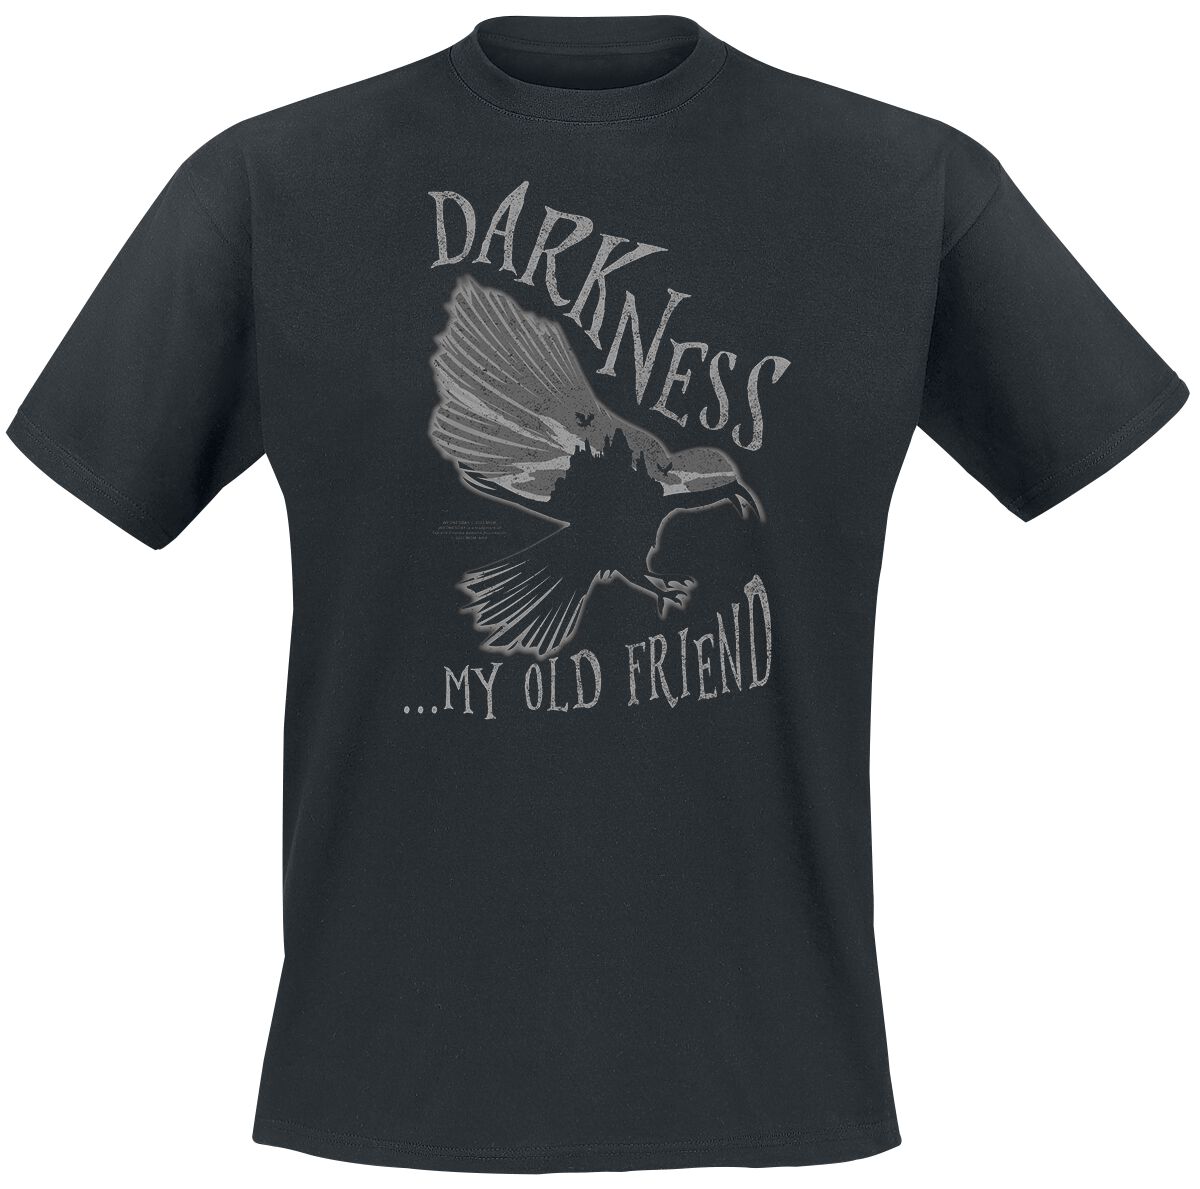 Wednesday Darkness... My Old Friend T-Shirt schwarz in L